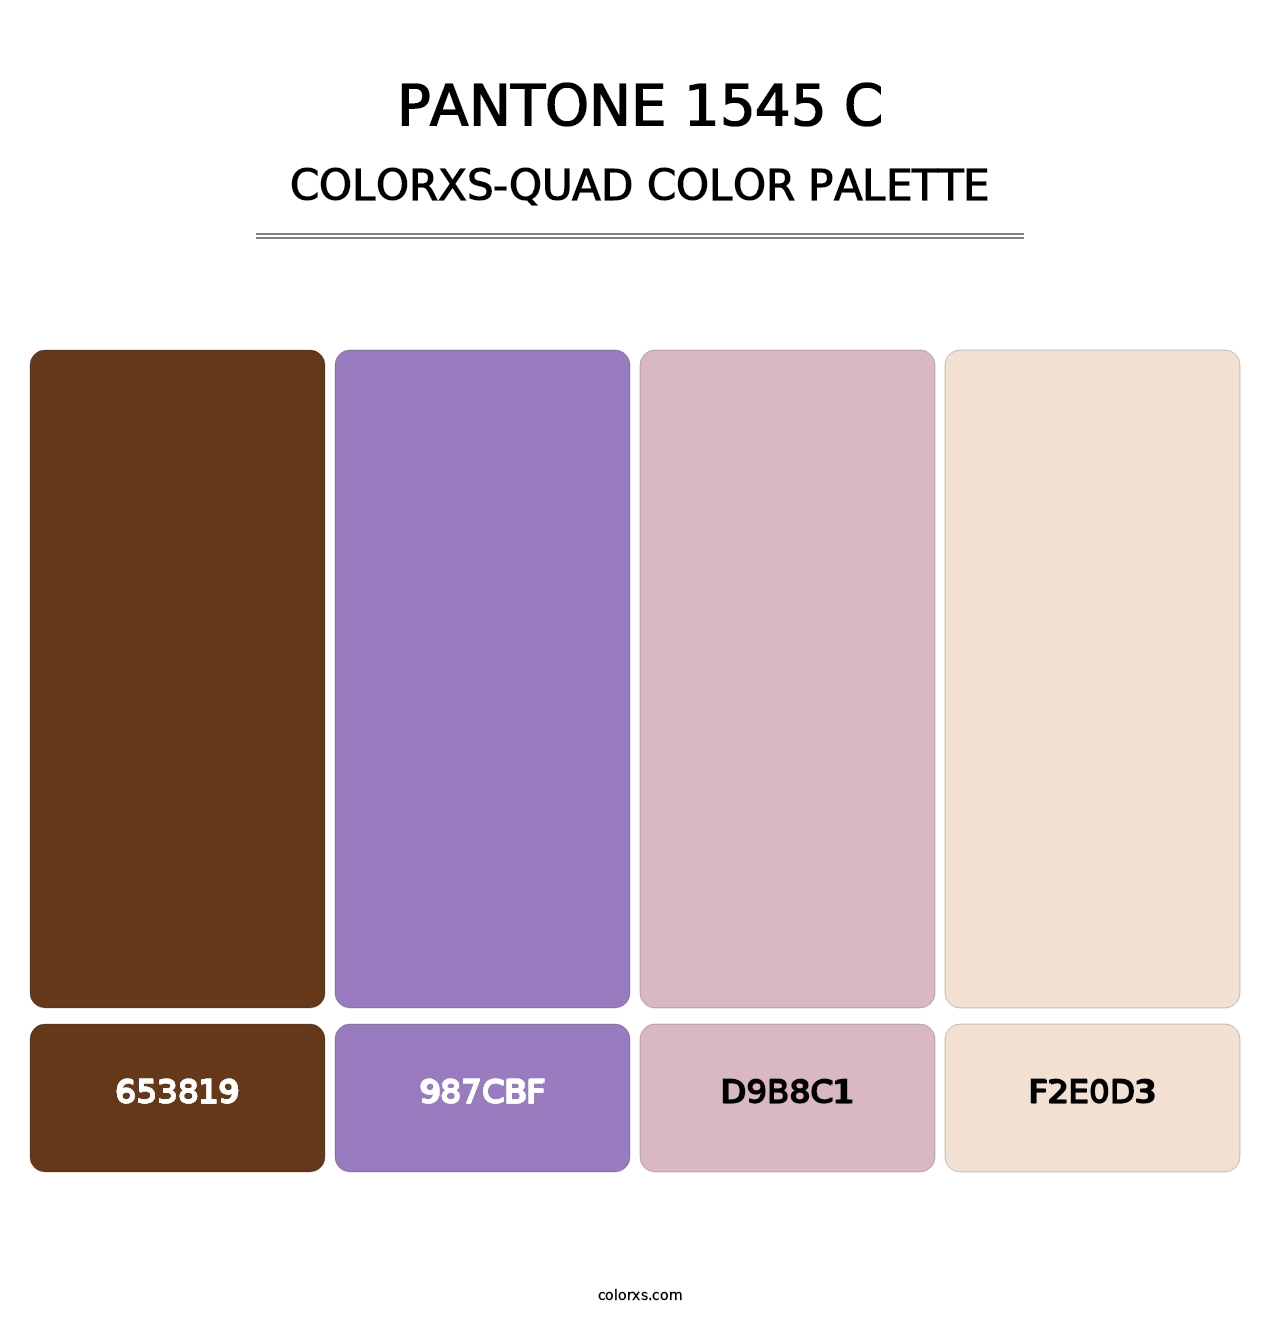 PANTONE 1545 C - Colorxs Quad Palette